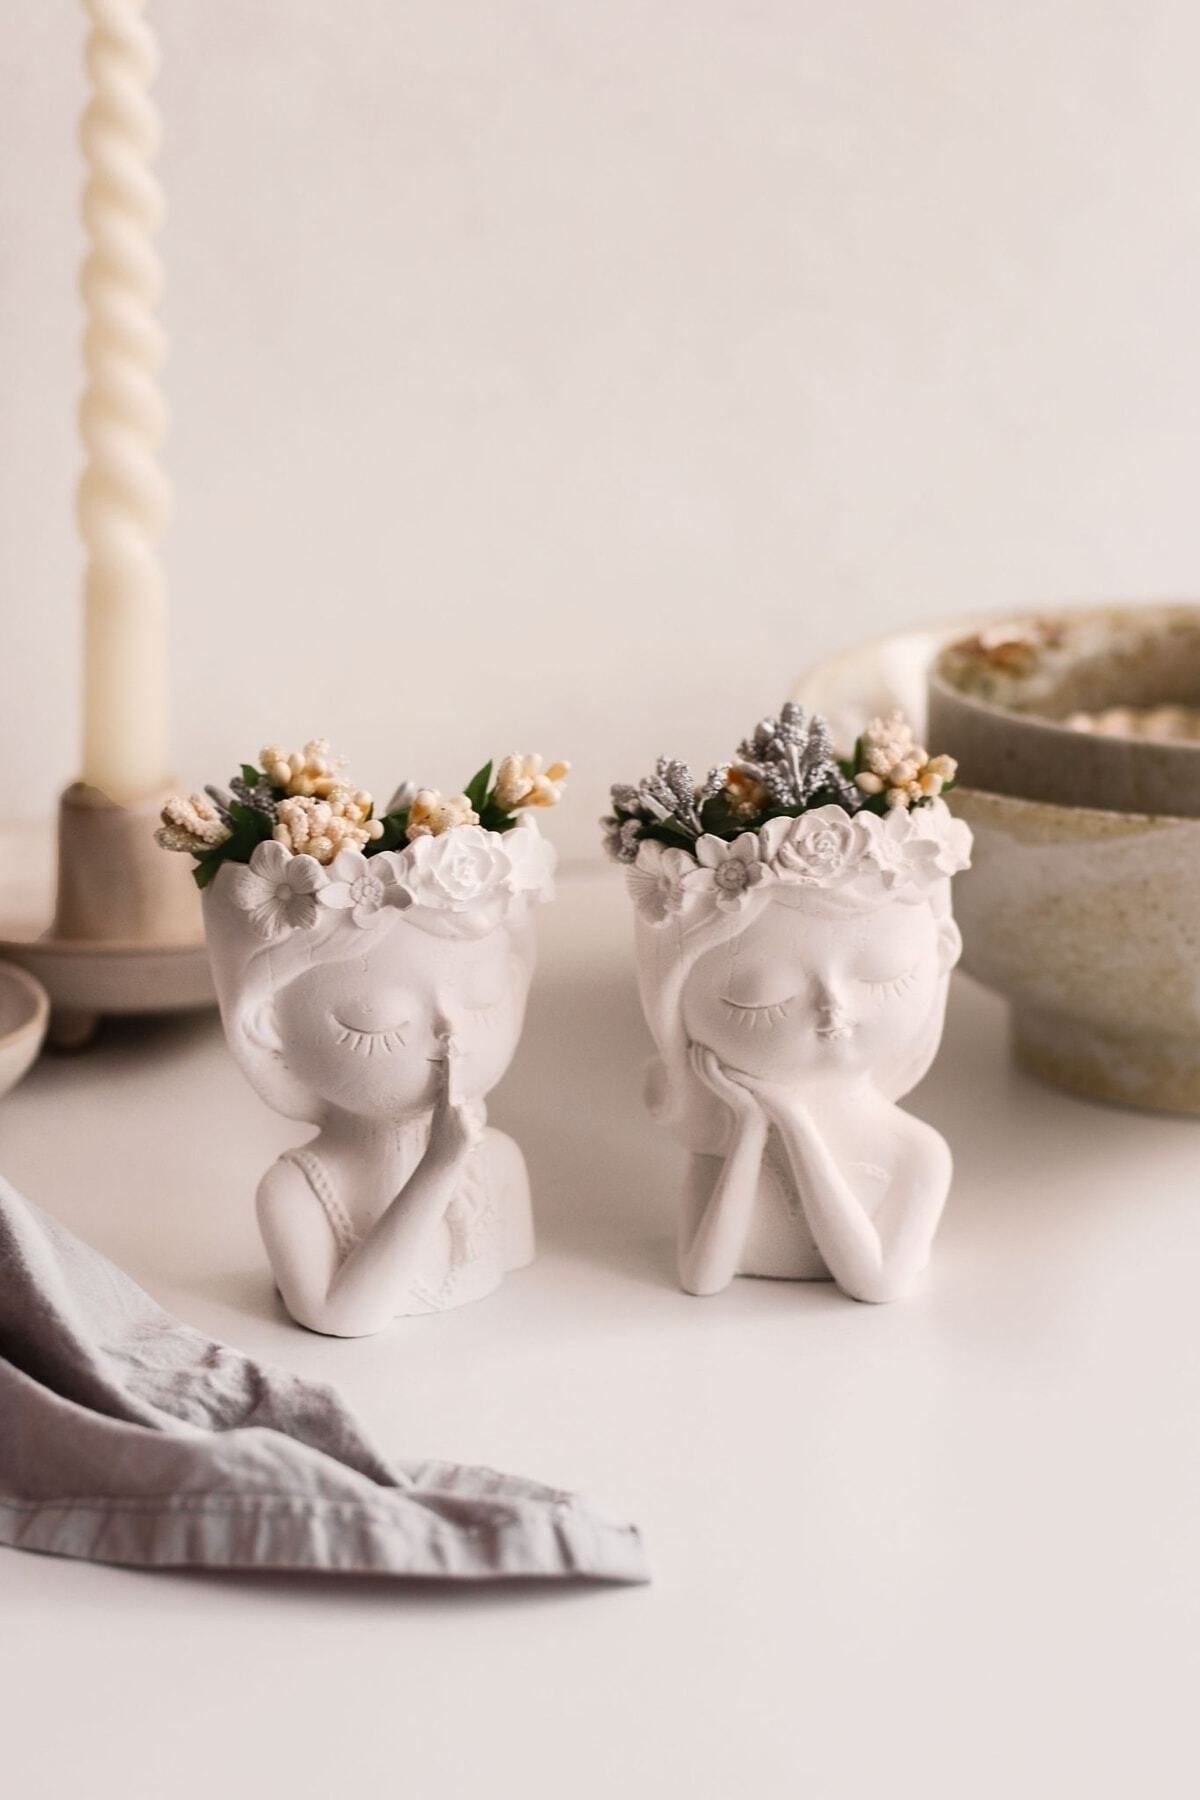 LALEZEN HOME İkili Çiçekli Kız Kardeşler Dekor Vazo (Çiçekler dahildir)